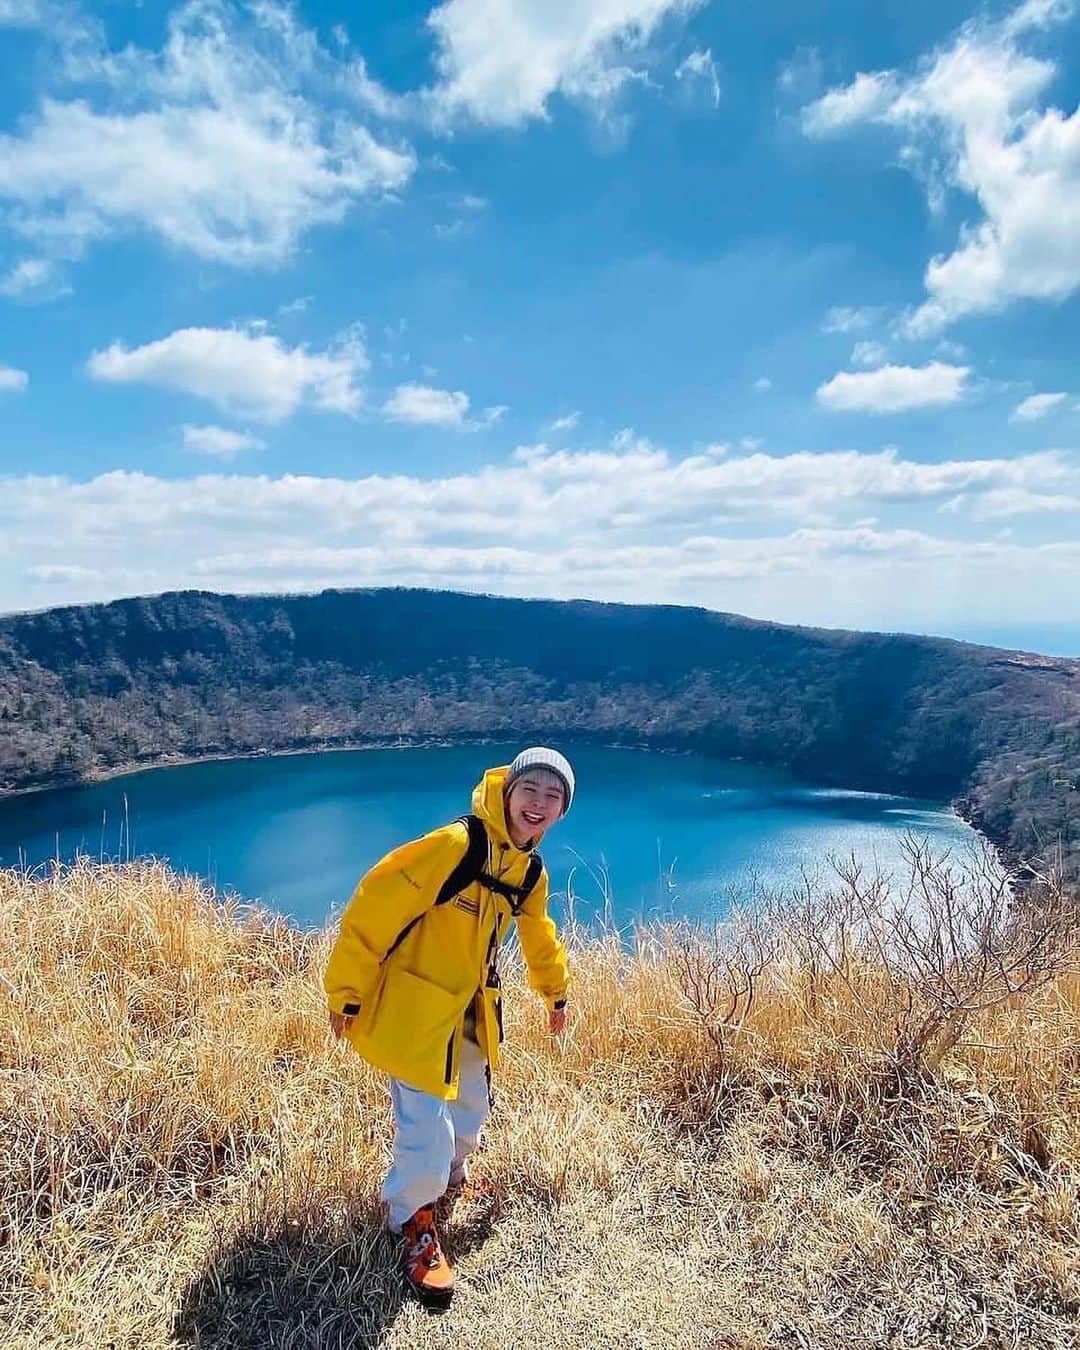 ジェットスター航空のインスタグラム：「行きたい！と思ったら【いいね💙】 #jettabi_japan #鹿児島編🍠 コバルトブルーの水面が神秘的な #大浪池   鹿児島と宮崎の県境にある火山群「霧島山」の火砕丘として知られ、標高1,411mと比較的登りやすい人気の登山スポット🚩 登った先に広がるのは、周囲1.9km、水深11mの火口湖「大浪池」。その美しい #大浪池ブルー に感動すること間違いなしでスター🌟  山頂までの道は歩きやすく整備されているため、登山初心者にとっても安心👌  自然豊かな大浪池で、心身ともにリフレッシュしてみては？😎  【大浪池】 📍鹿児島県霧島市牧園町高千穂  -------------------------------------------- ／ 📣ジェットスターなら、鹿児島まで ＼ ✈︎東京（成田）から 片道¥5,590〜  鹿児島～東京（成田）路線は、おかげさまで5月31日に就航10周年を迎えます🎉 今後もより多くのお客様に、安全かつ安心してご利用いただける気軽な空の旅を提供してまいります✈️  --------------------------------------------  ジェットスター・ジャパン公式アカウント（@jetstar_japan）では「"次に行きたい"が見つかる」をテーマに就航地の魅力をご紹介✈️⭐️「#jettabi_japan」をつけて、皆さんのFun&Happyな旅の思い出をぜひご投稿ください！素敵なお写真は、公式アカウントでご紹介させていただきます♪  ⭐️Special thanks📸 by @nao____1427（1、5枚目）、 @yoshida_ryo_（2枚目）、@ja_mi_photo（3枚目）、@yukarichasom（4枚目）@sakurako0830（6枚目）  --------------------------------------------  ※運賃はエコノミークラス「Starter」。支払手数料、空港使用料等が別途必要です。受託手荷物の料金は含まれません。諸条件が適用されます。 ※就航地のご紹介内容に関する最新情報は、下記の参照サイト等でご確認ください。 -------------------------------------------- 【参照サイト】 鹿児島観光サイト「かごしまの旅」 --------------------------------------------  #鹿児島 #鹿児島観光 #鹿児島旅行 #ジェットスター #jetstar #jetstar_japan #LCC #飛行機 #trip #旅好きな人と繋がりたい #九州 #九州観光 #九州旅行 #国内旅行 #鹿児島ドライブ #鹿児島デート #kagoshima #コスパ旅 #女子旅 #鹿児島絶景 #九州絶景 #霧島山 #登山好きな人と繋がりたい #カゴスタグラマー #鹿児島パワースポット」